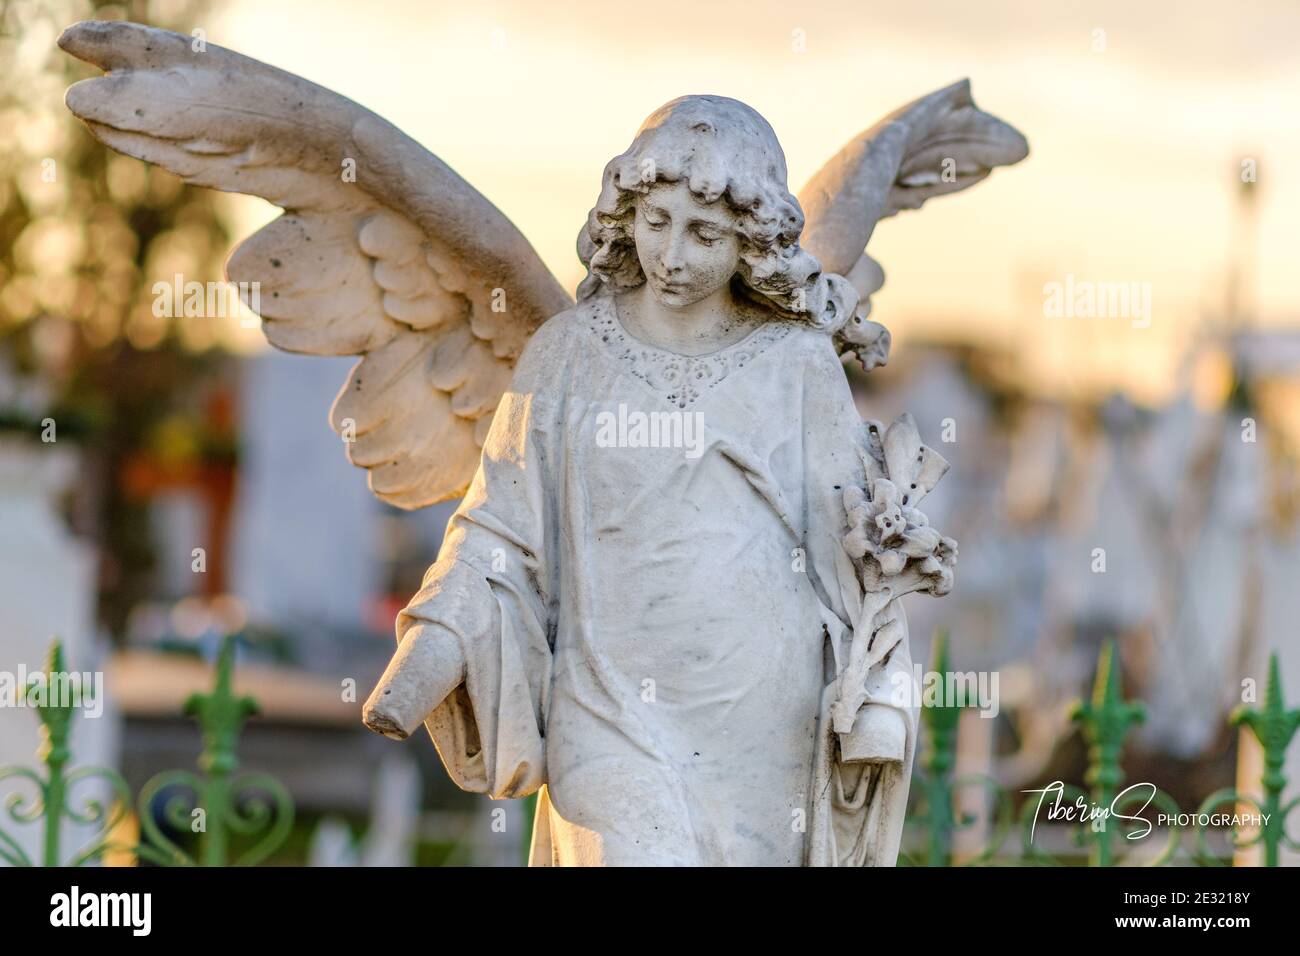 Gebrochene Hände junge Frau Engel mit riesigen Flügeln Begräbnismonument, weiße Marmorstatue auf einem Friedhof Grab. Stockfoto